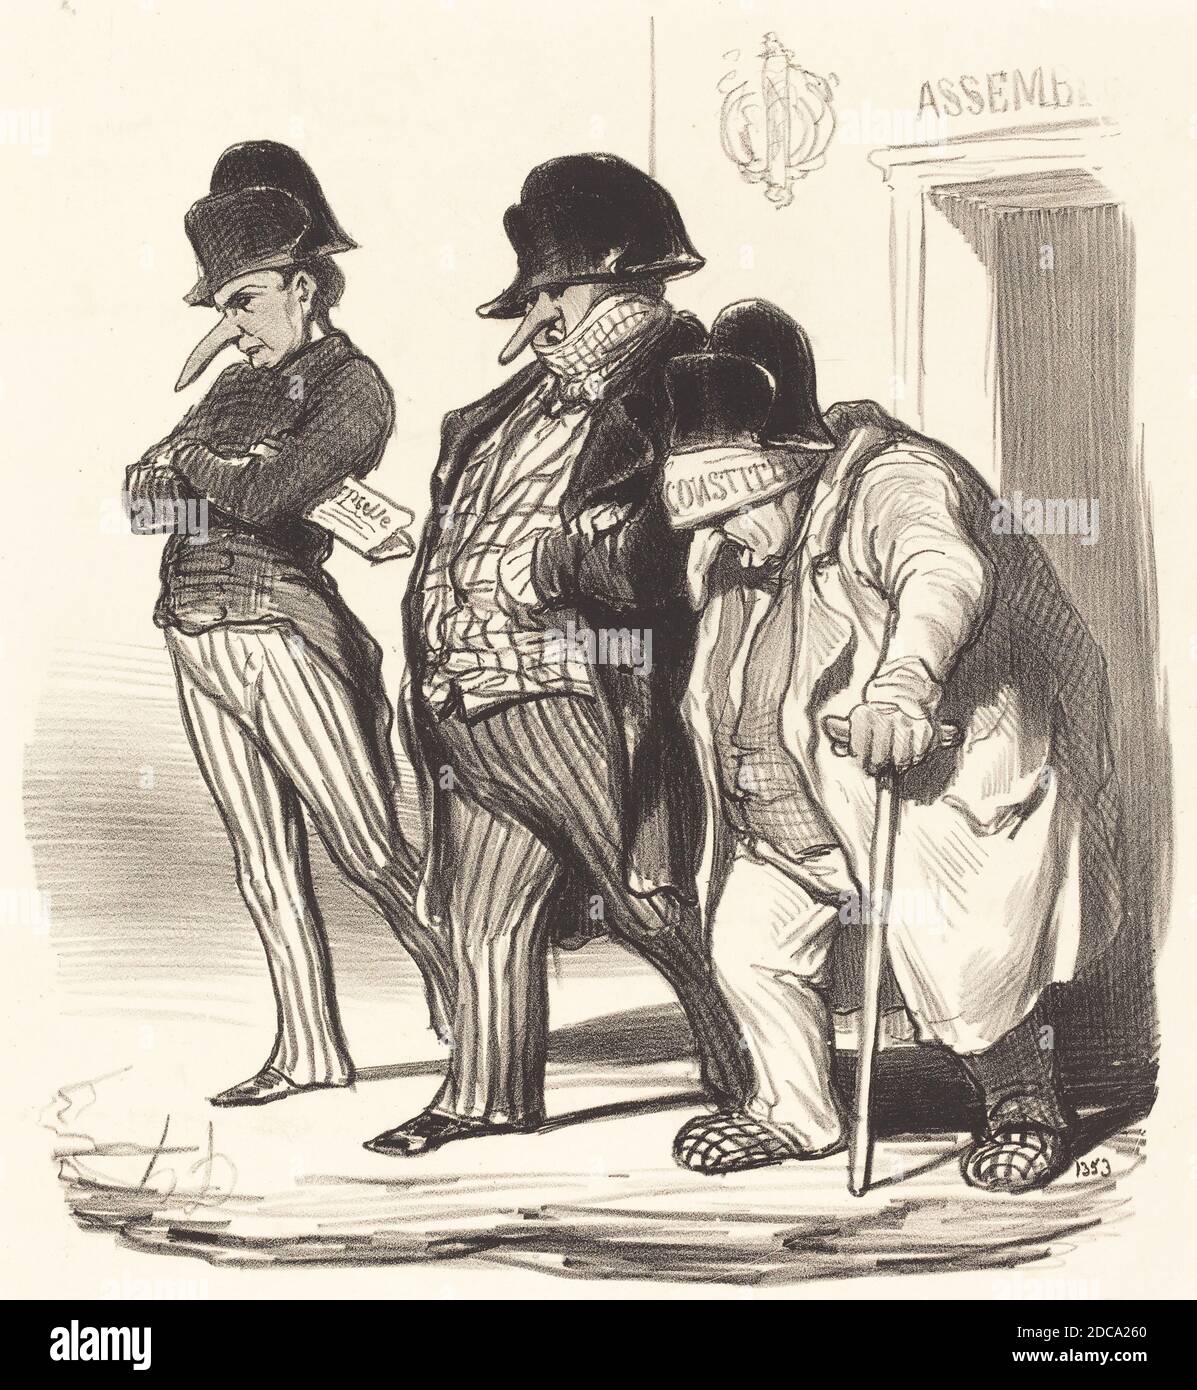 Honoré Daumier, (artist), French, 1808 - 1879, Les Journaux Napoléoniens sortant de l'Assemblée Nationale..., Actualités, (series), 1848, lithograph Stock Photo